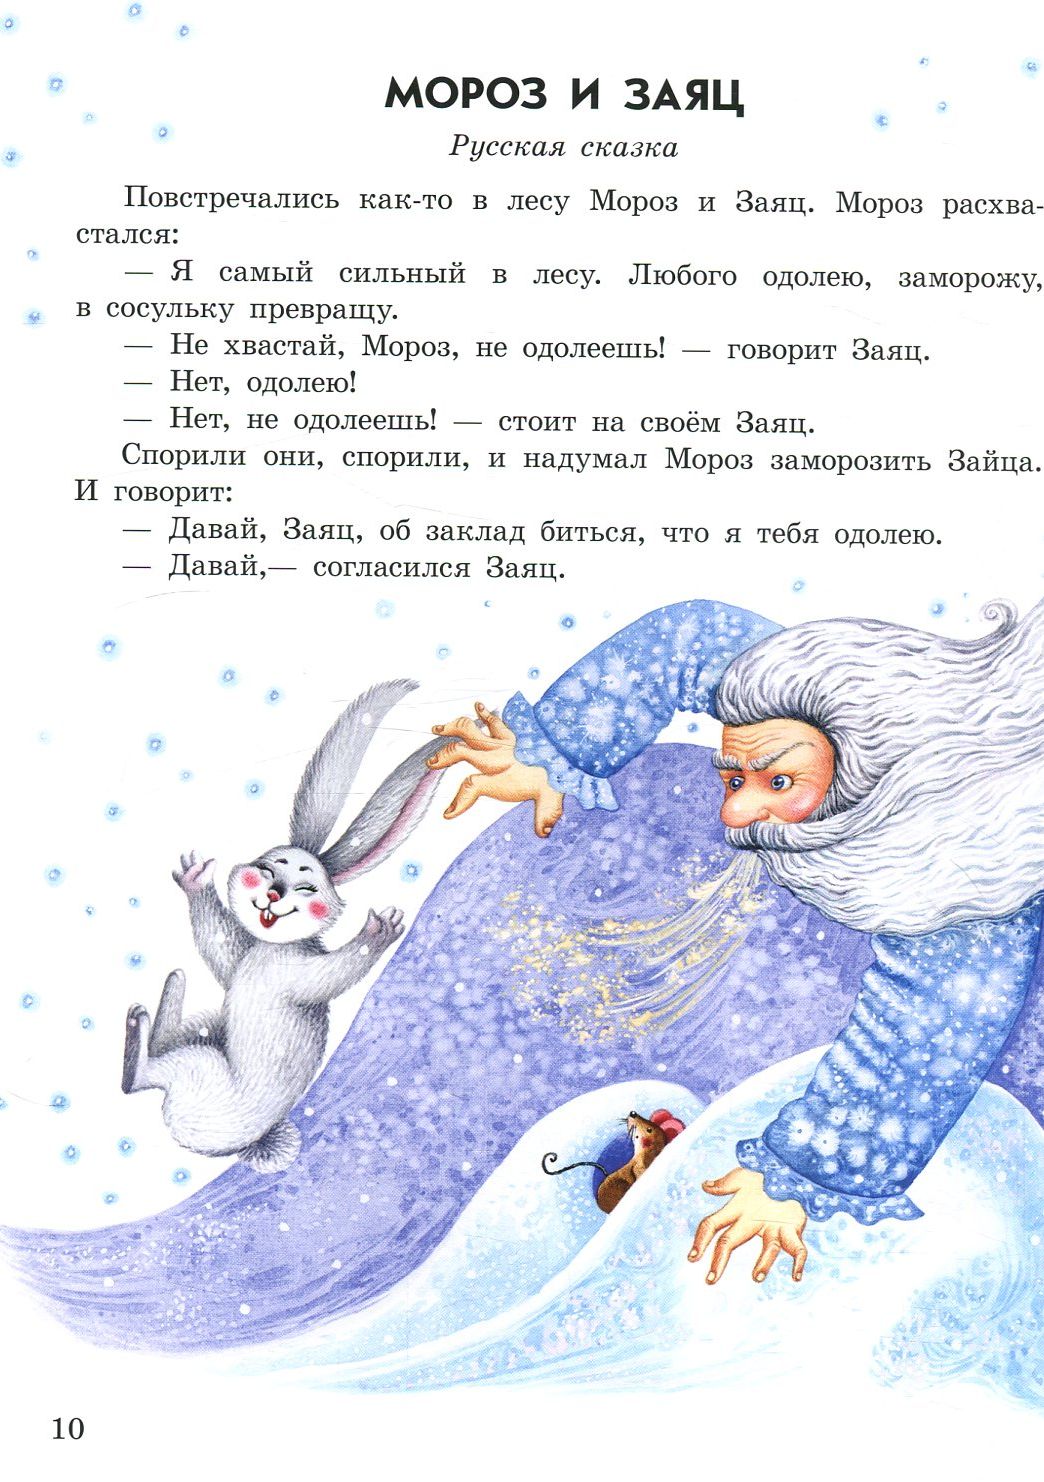 Сказка мороза текст. Сказка Мороз и заяц. Книга Мороз и заяц. Казка МОРОЗL Заець. Чтение сказки Мороз и заяц.